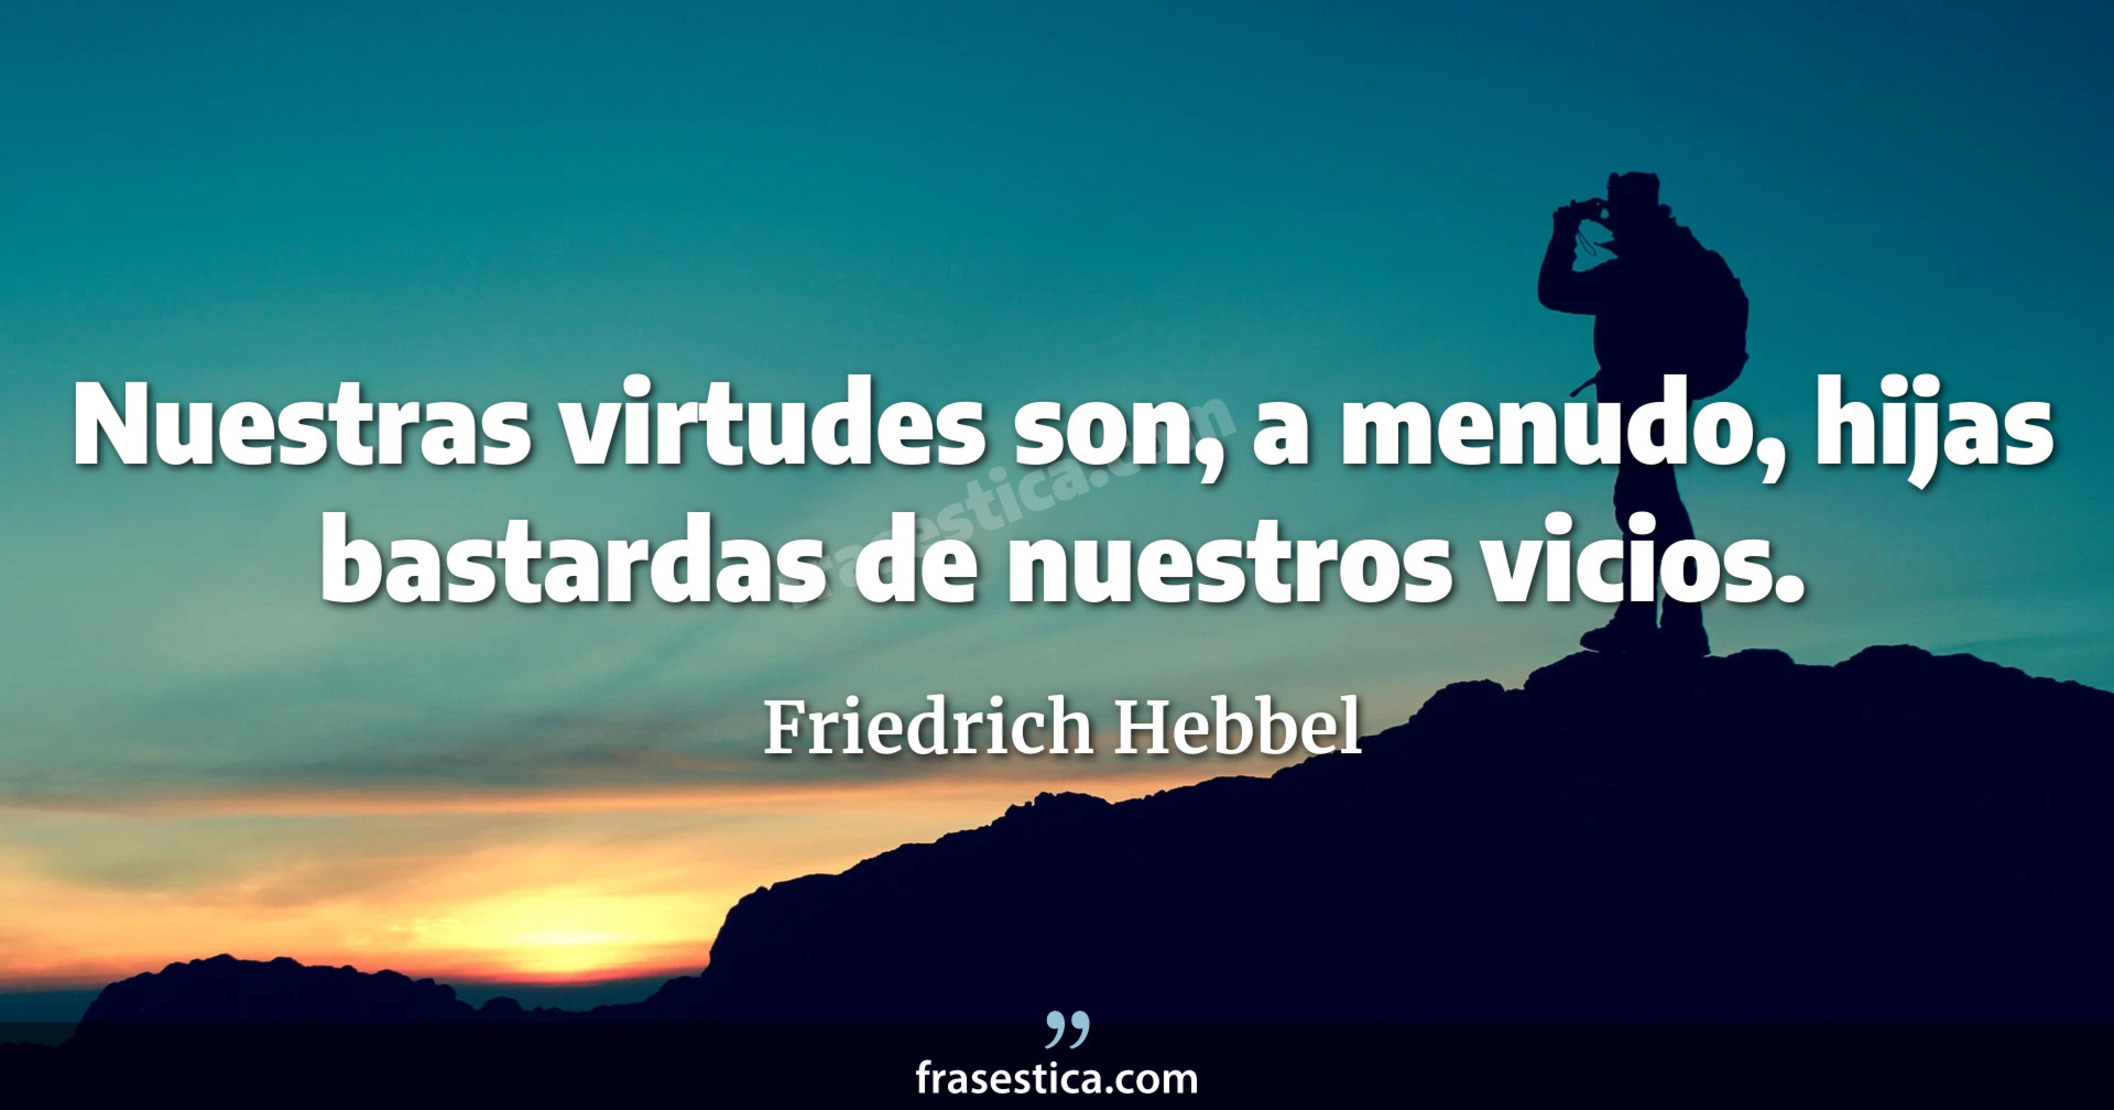 Nuestras virtudes son, a menudo, hijas bastardas de nuestros vicios. - Friedrich Hebbel